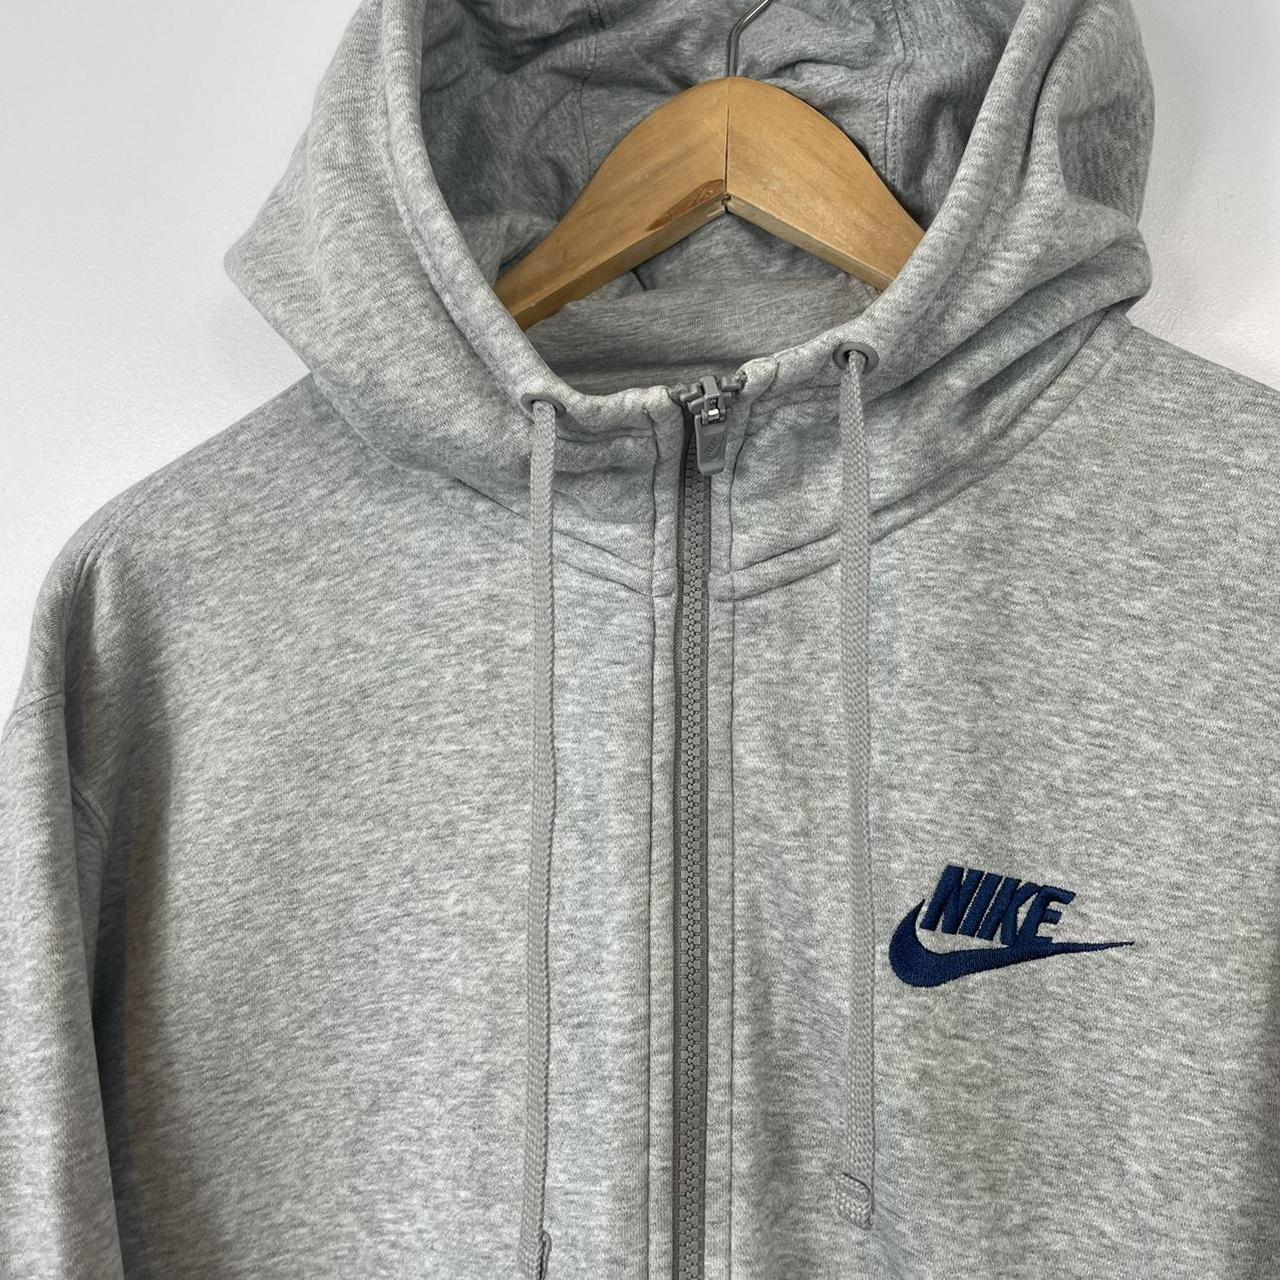 Nike Hoodie ‘Just Do It’ Hoodie, Full Zip, Grey,... - Depop